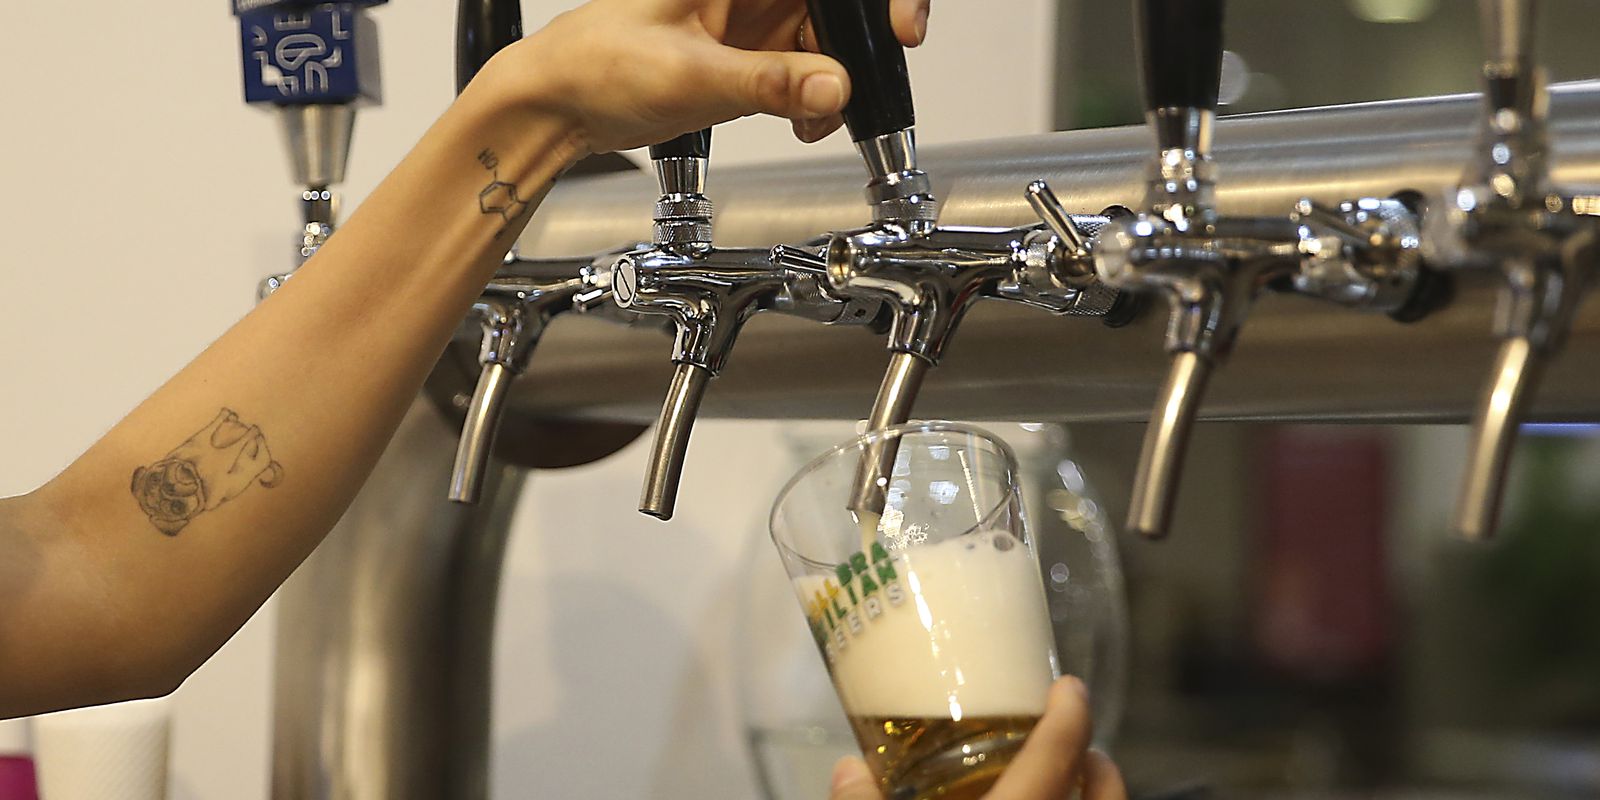 Número de cervejarias registradas no pais aumentou 14,4% em 2020 O número de cervejarias está aumentando no Brasil. De acordo com o Anuário da Cerveja 2020 divulgado hoje (30) pelo Ministério da Agricultura, Pecuária e Abastecimento (Mapa), existem 1.383 cervejarias registradas no Brasil. O número é 14,4% maior do que o registrado no ano anterior.